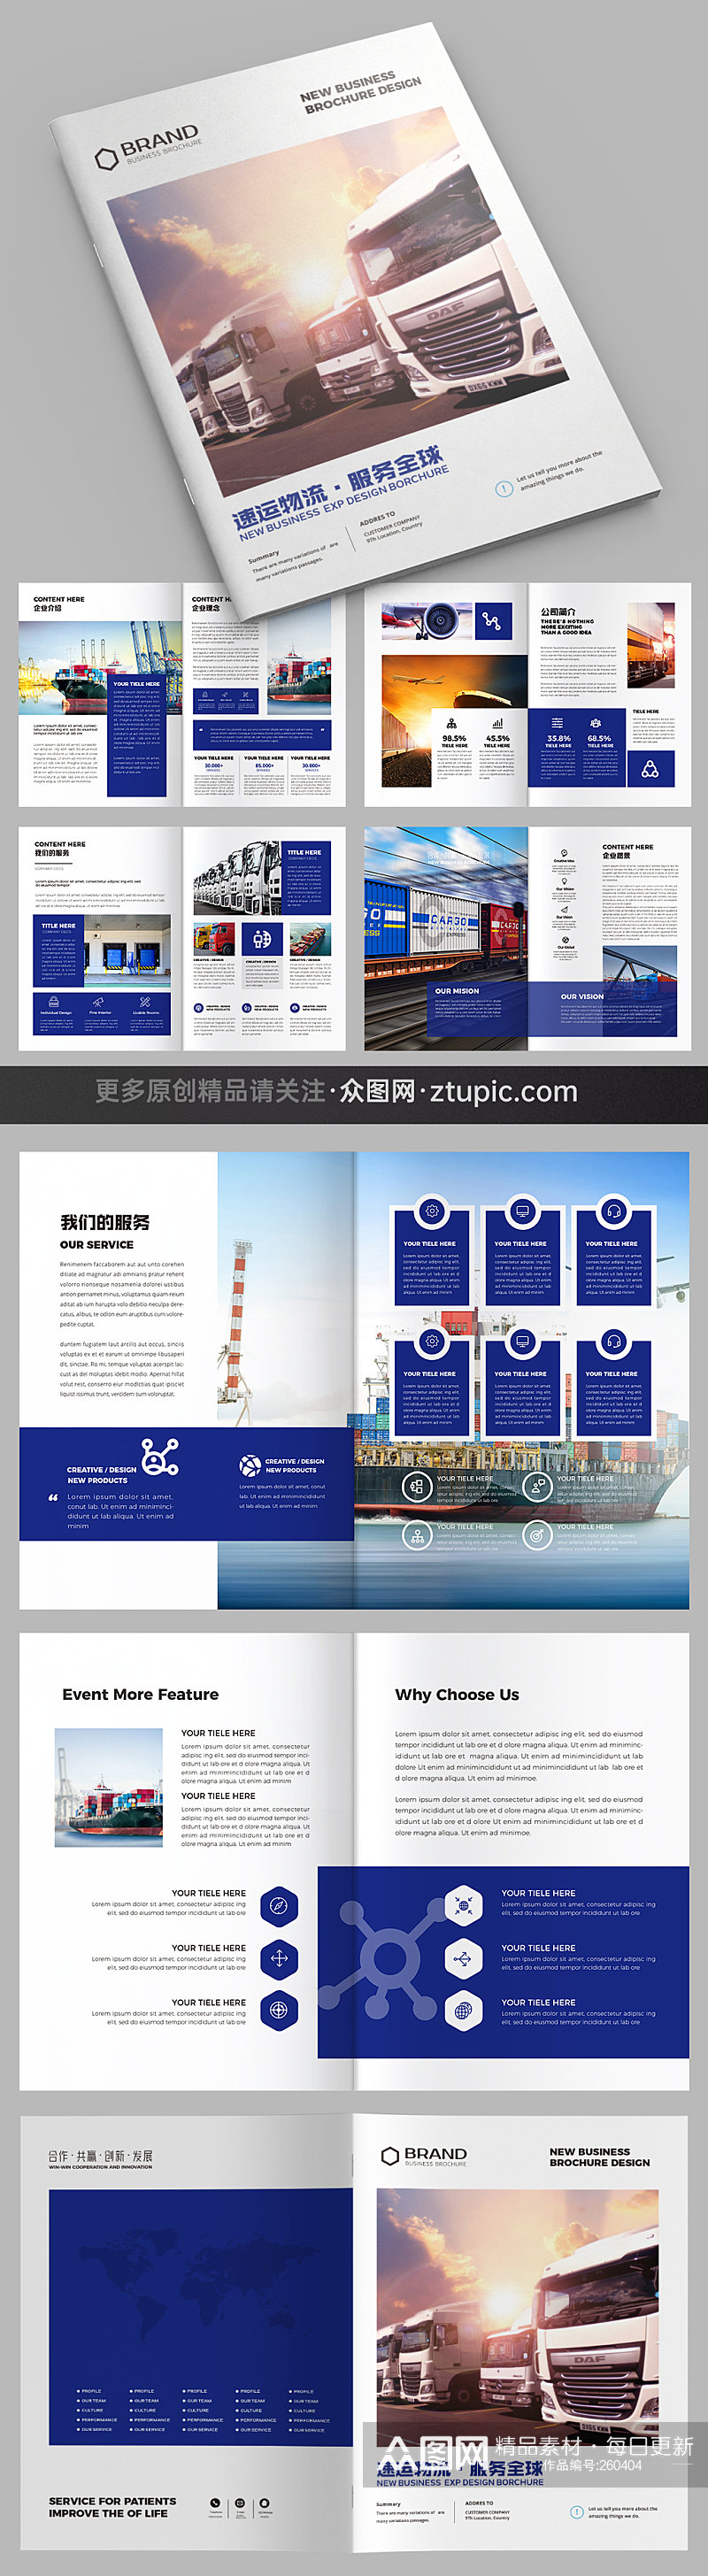 物流运输公司宣传册画册设计模板素材